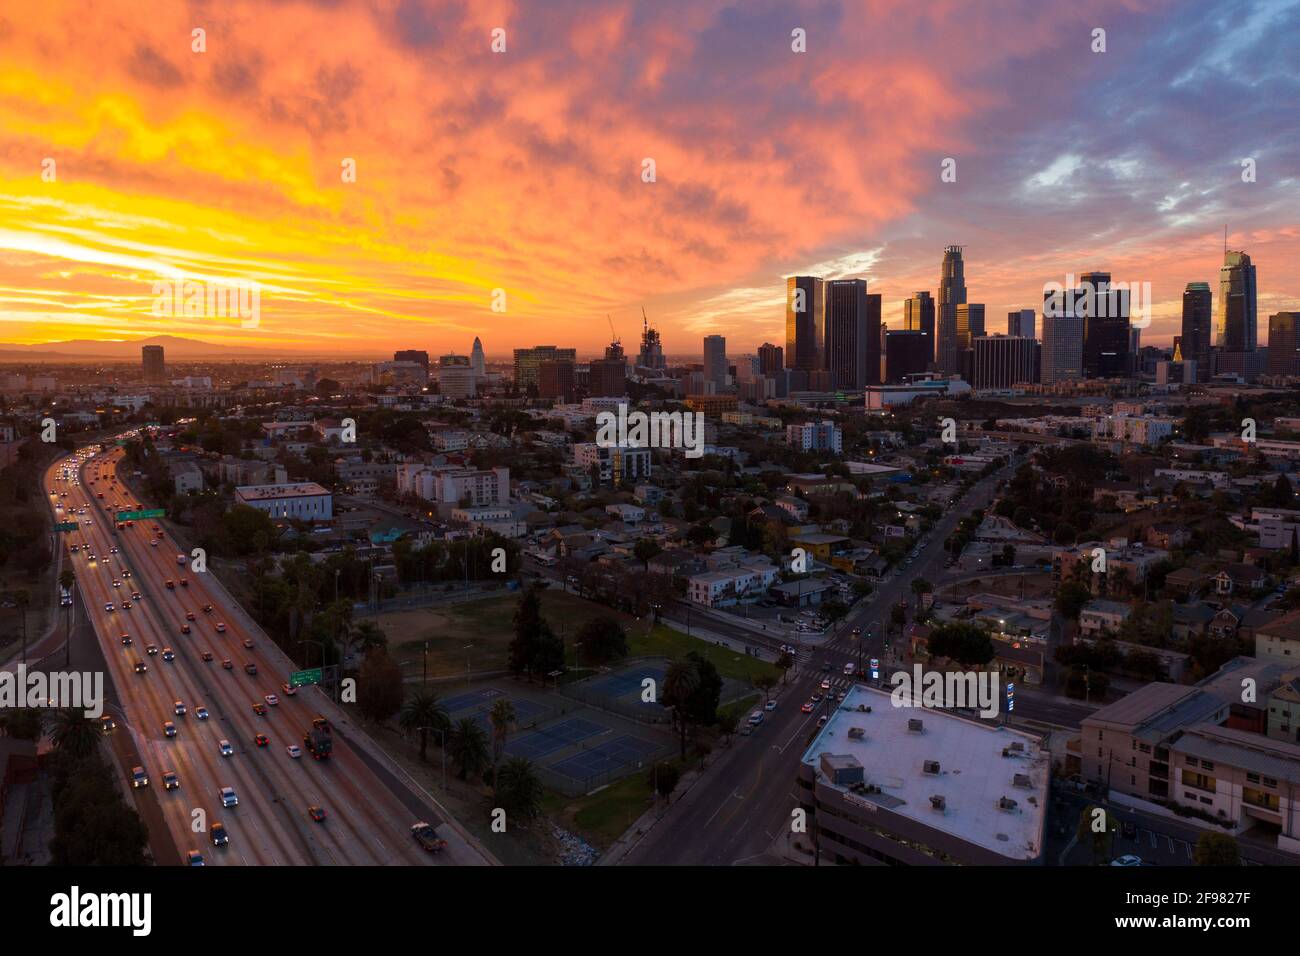 Espectacular amanecer sobre el centro de Los Ángeles y el Hollywood 101 Autopista al amanecer Foto de stock